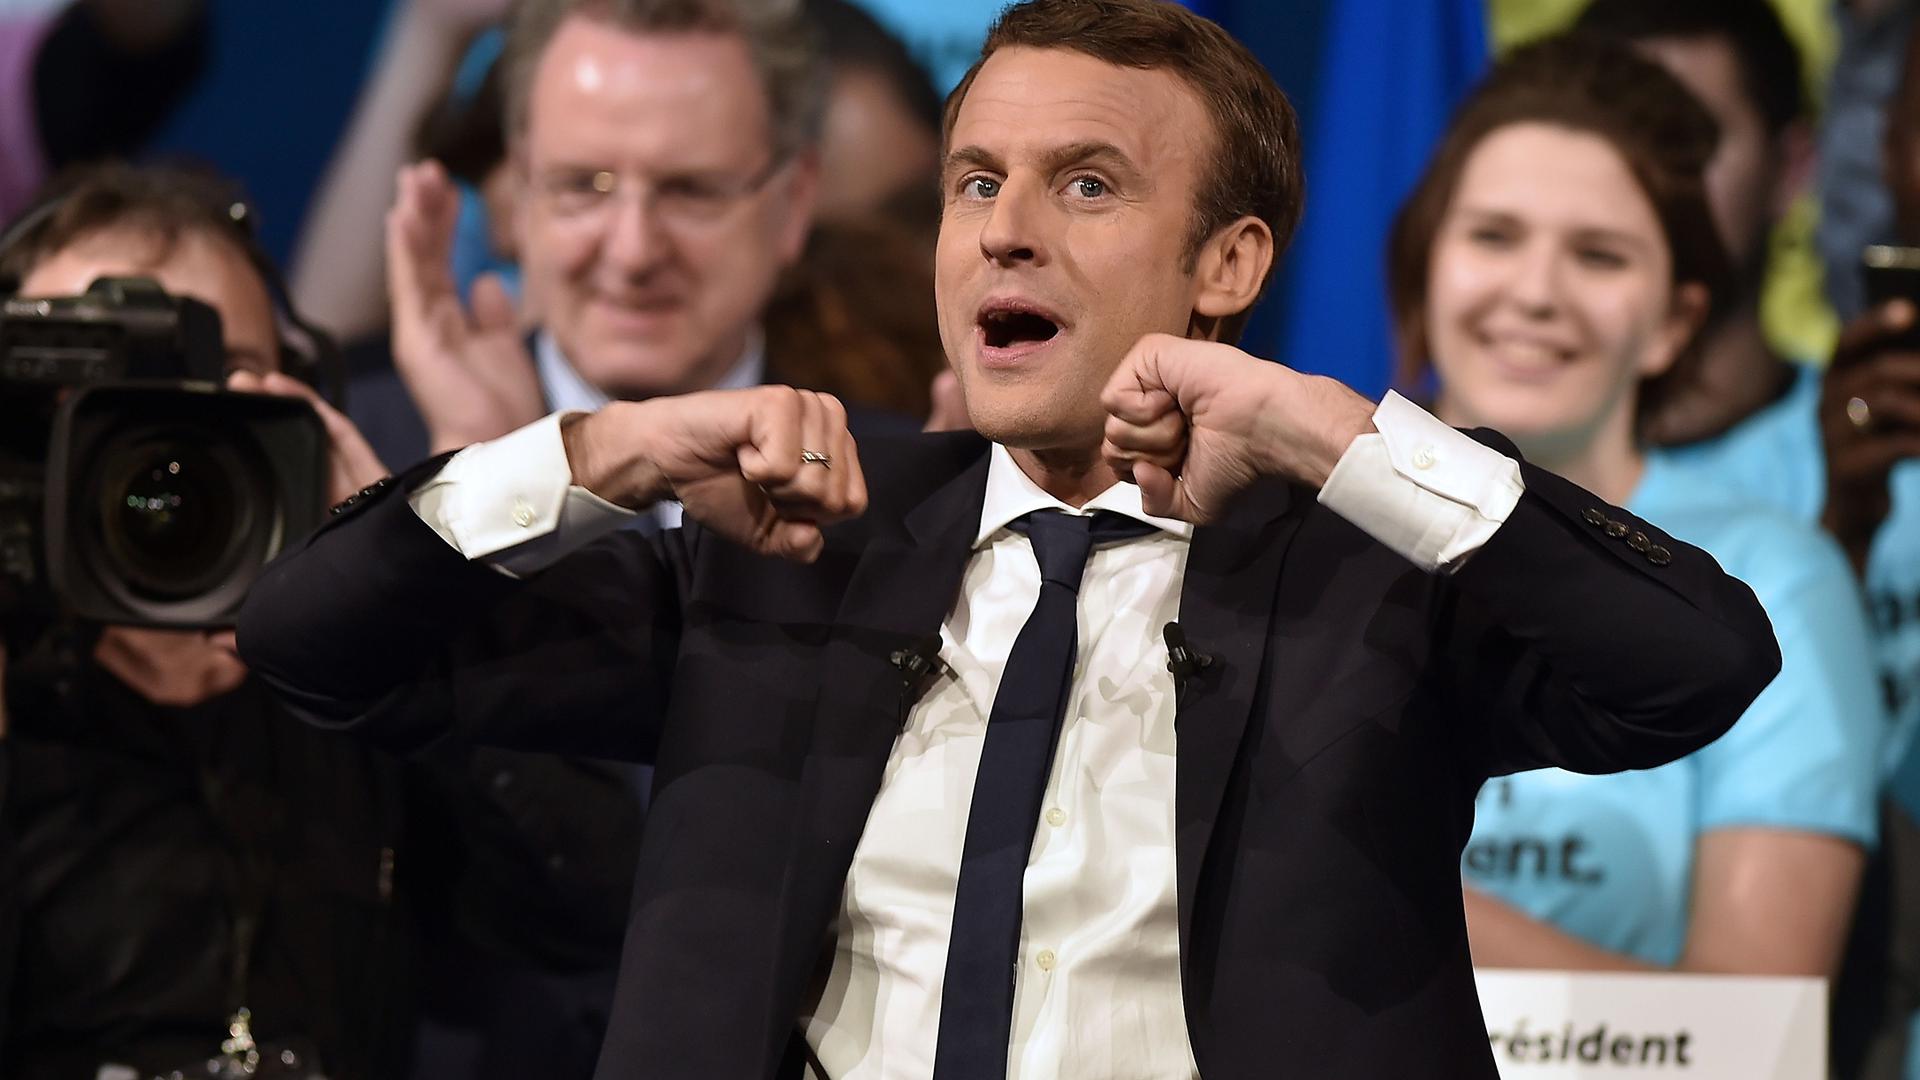 O liberal pró-europeu Emmanuel Macron